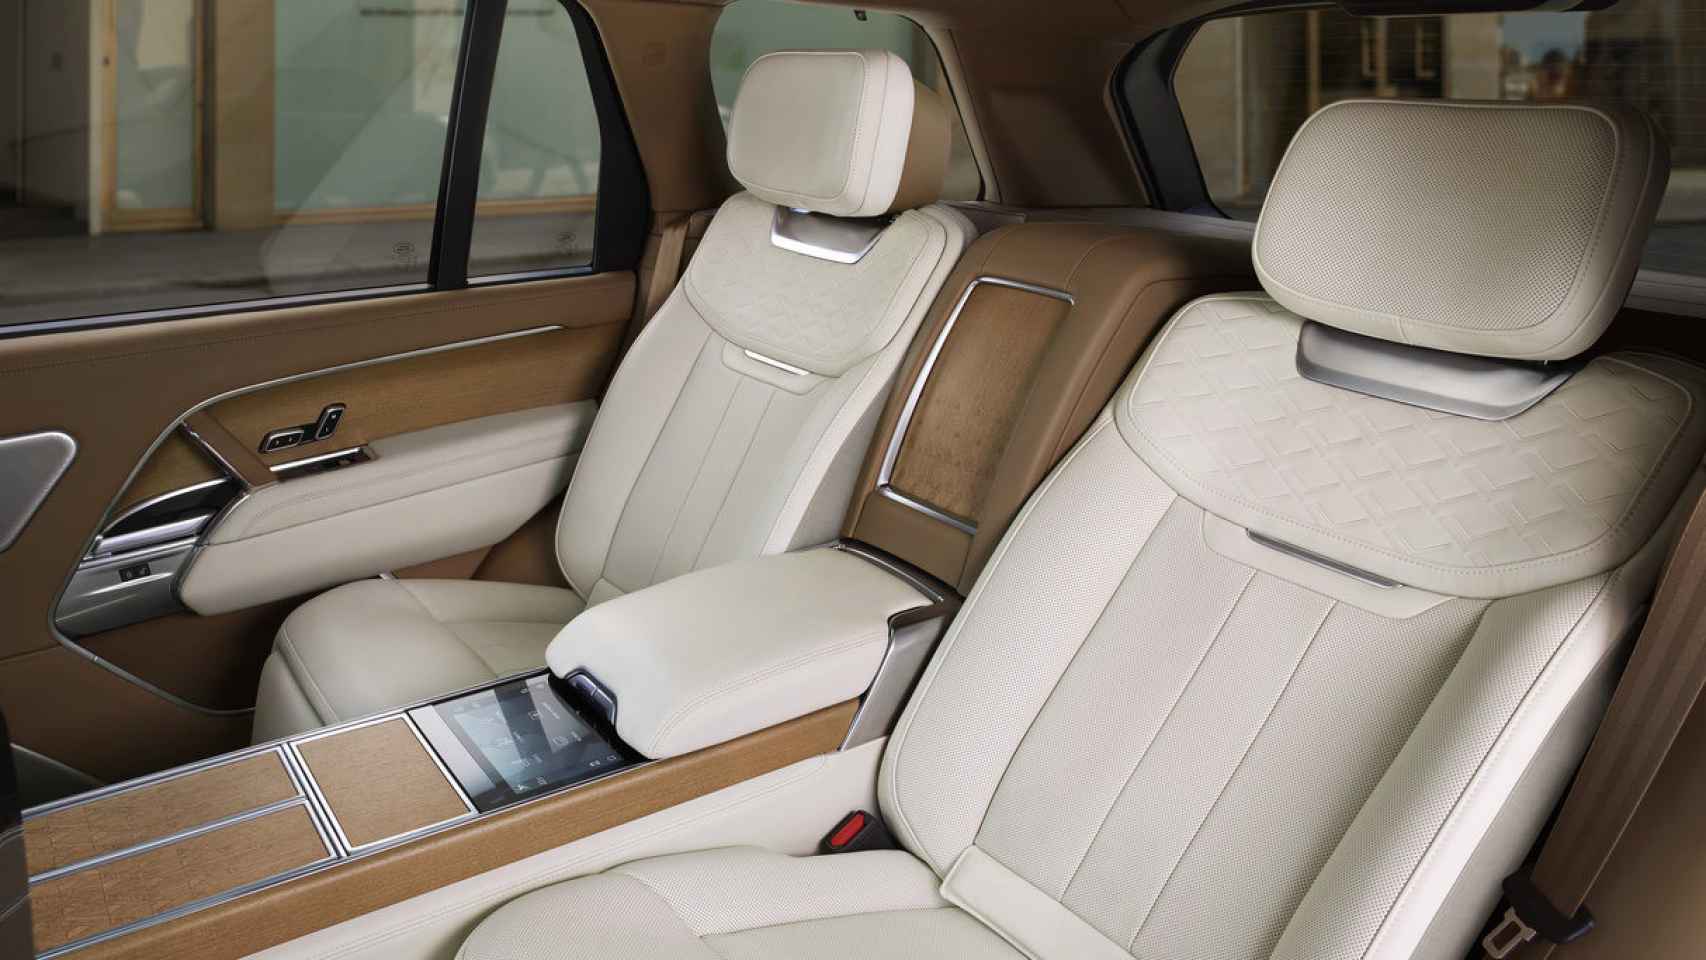 El confort a bordo es uno de los puntos claves del Range Rover.